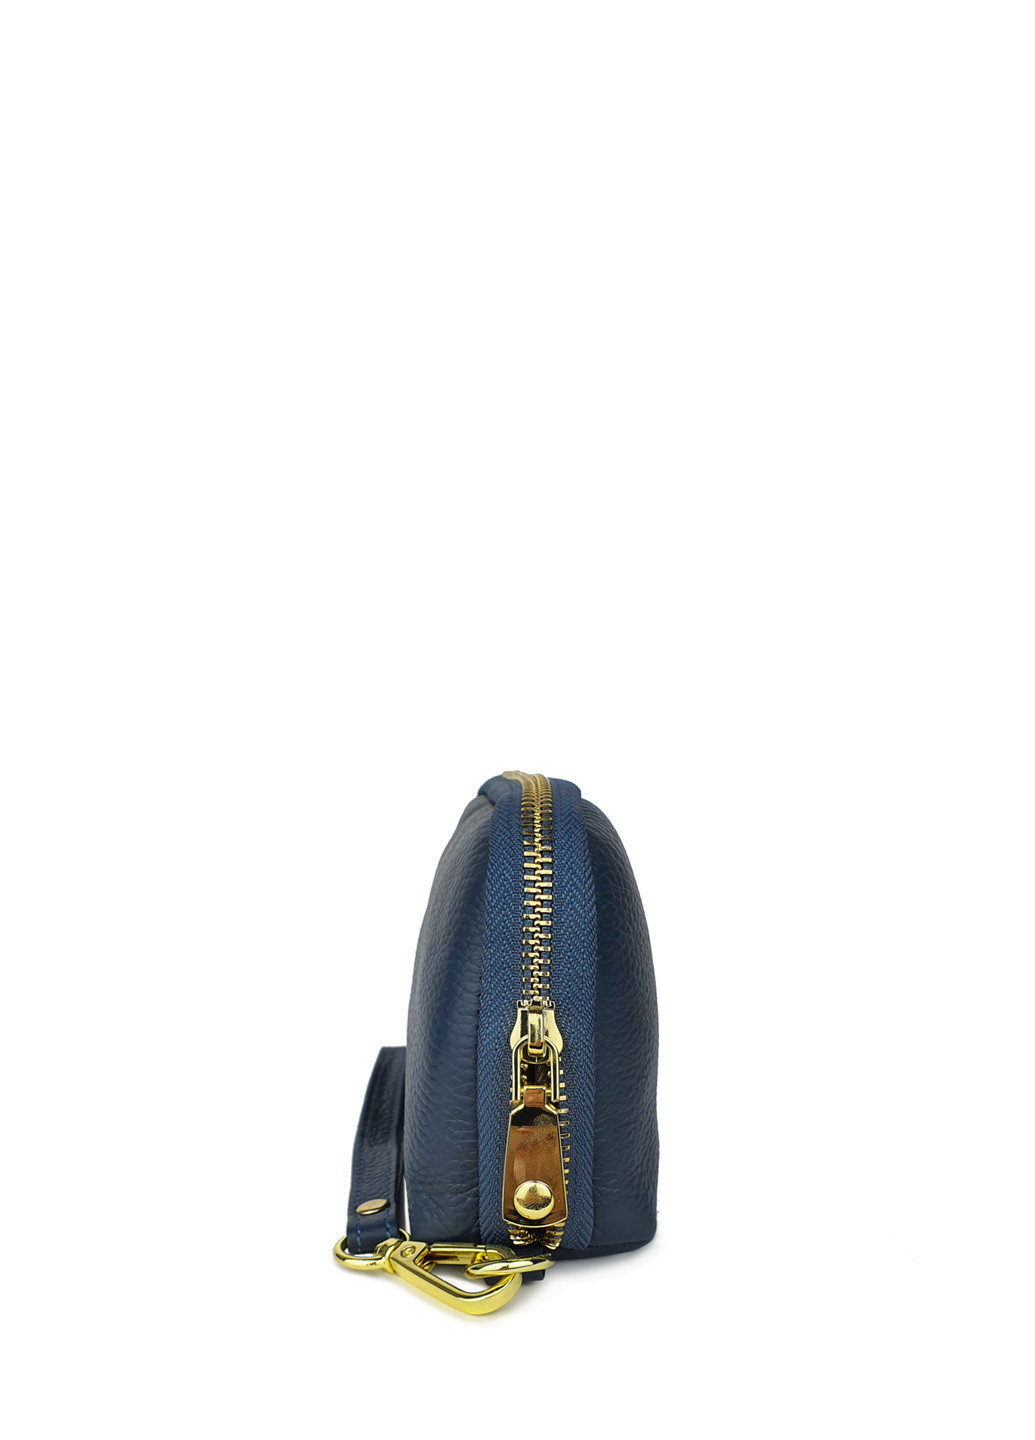 Жіночий гаманець портмоне великий синій шкіряний 21*11*5 Fashion (252033299)